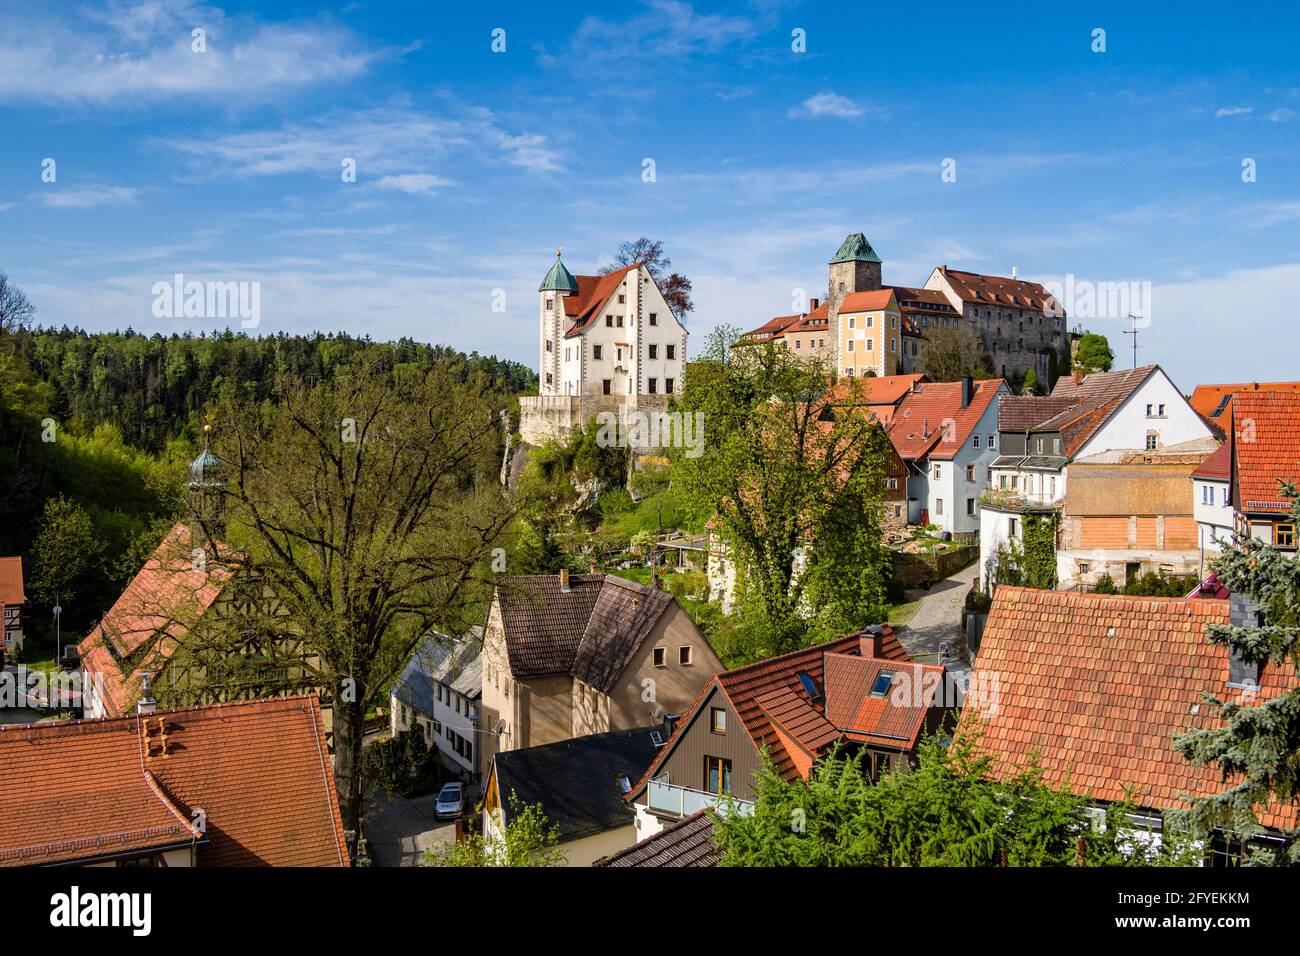 Castello di Hohnstein, che si affaccia sui tetti della piccola città. Foto Stock